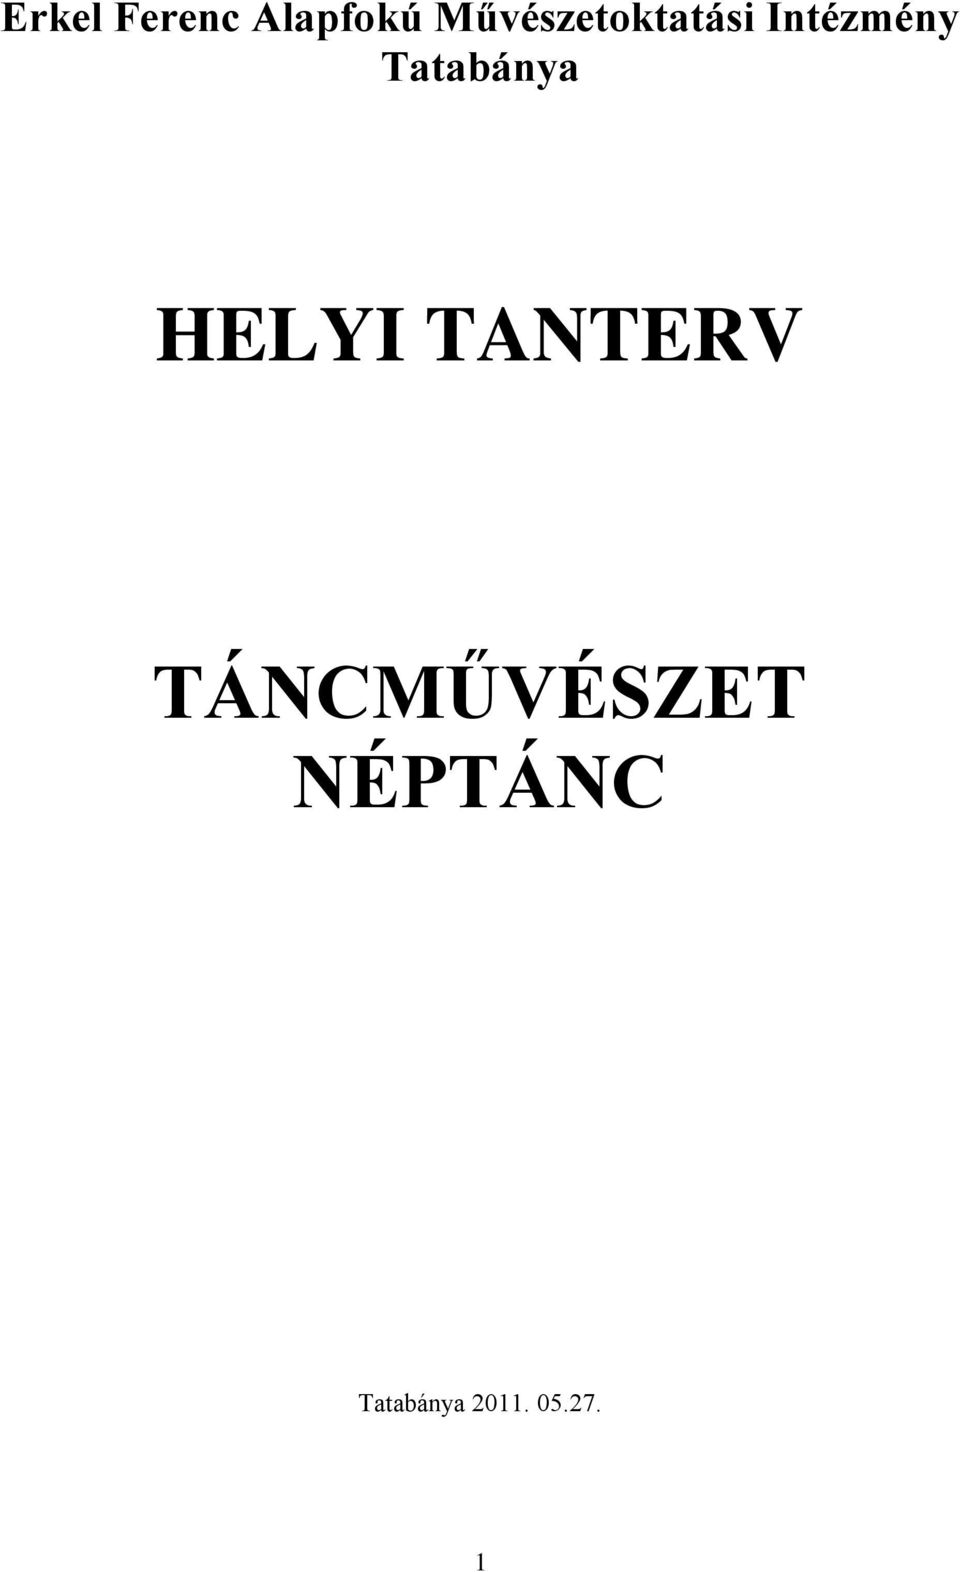 Tatabánya HELYI TANTERV